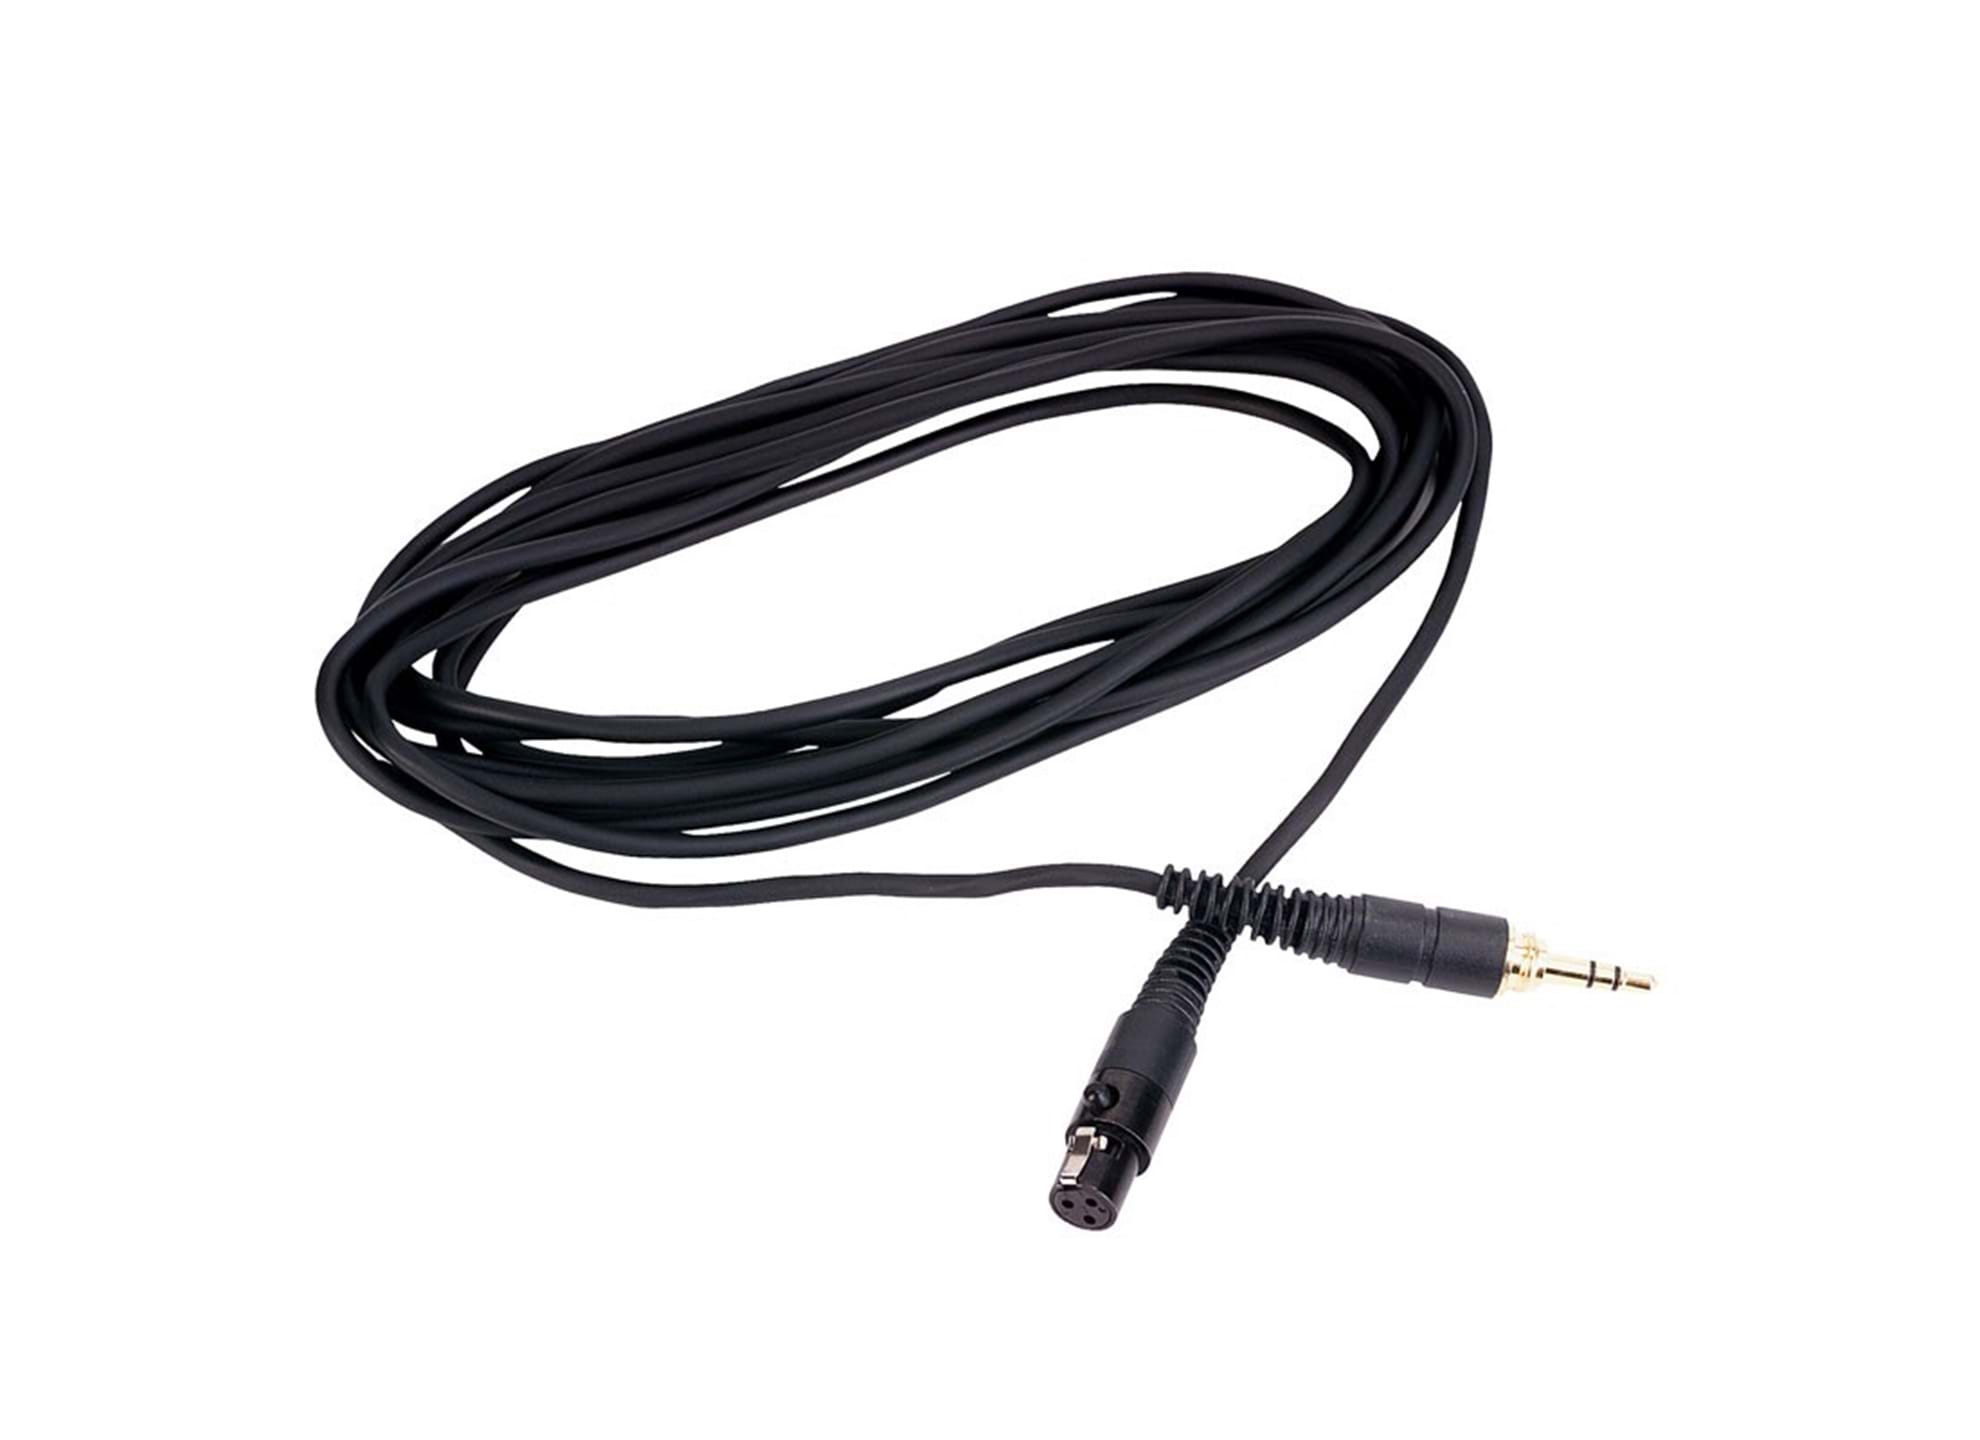 EK300, 3m kabel för AKG-hörlurar